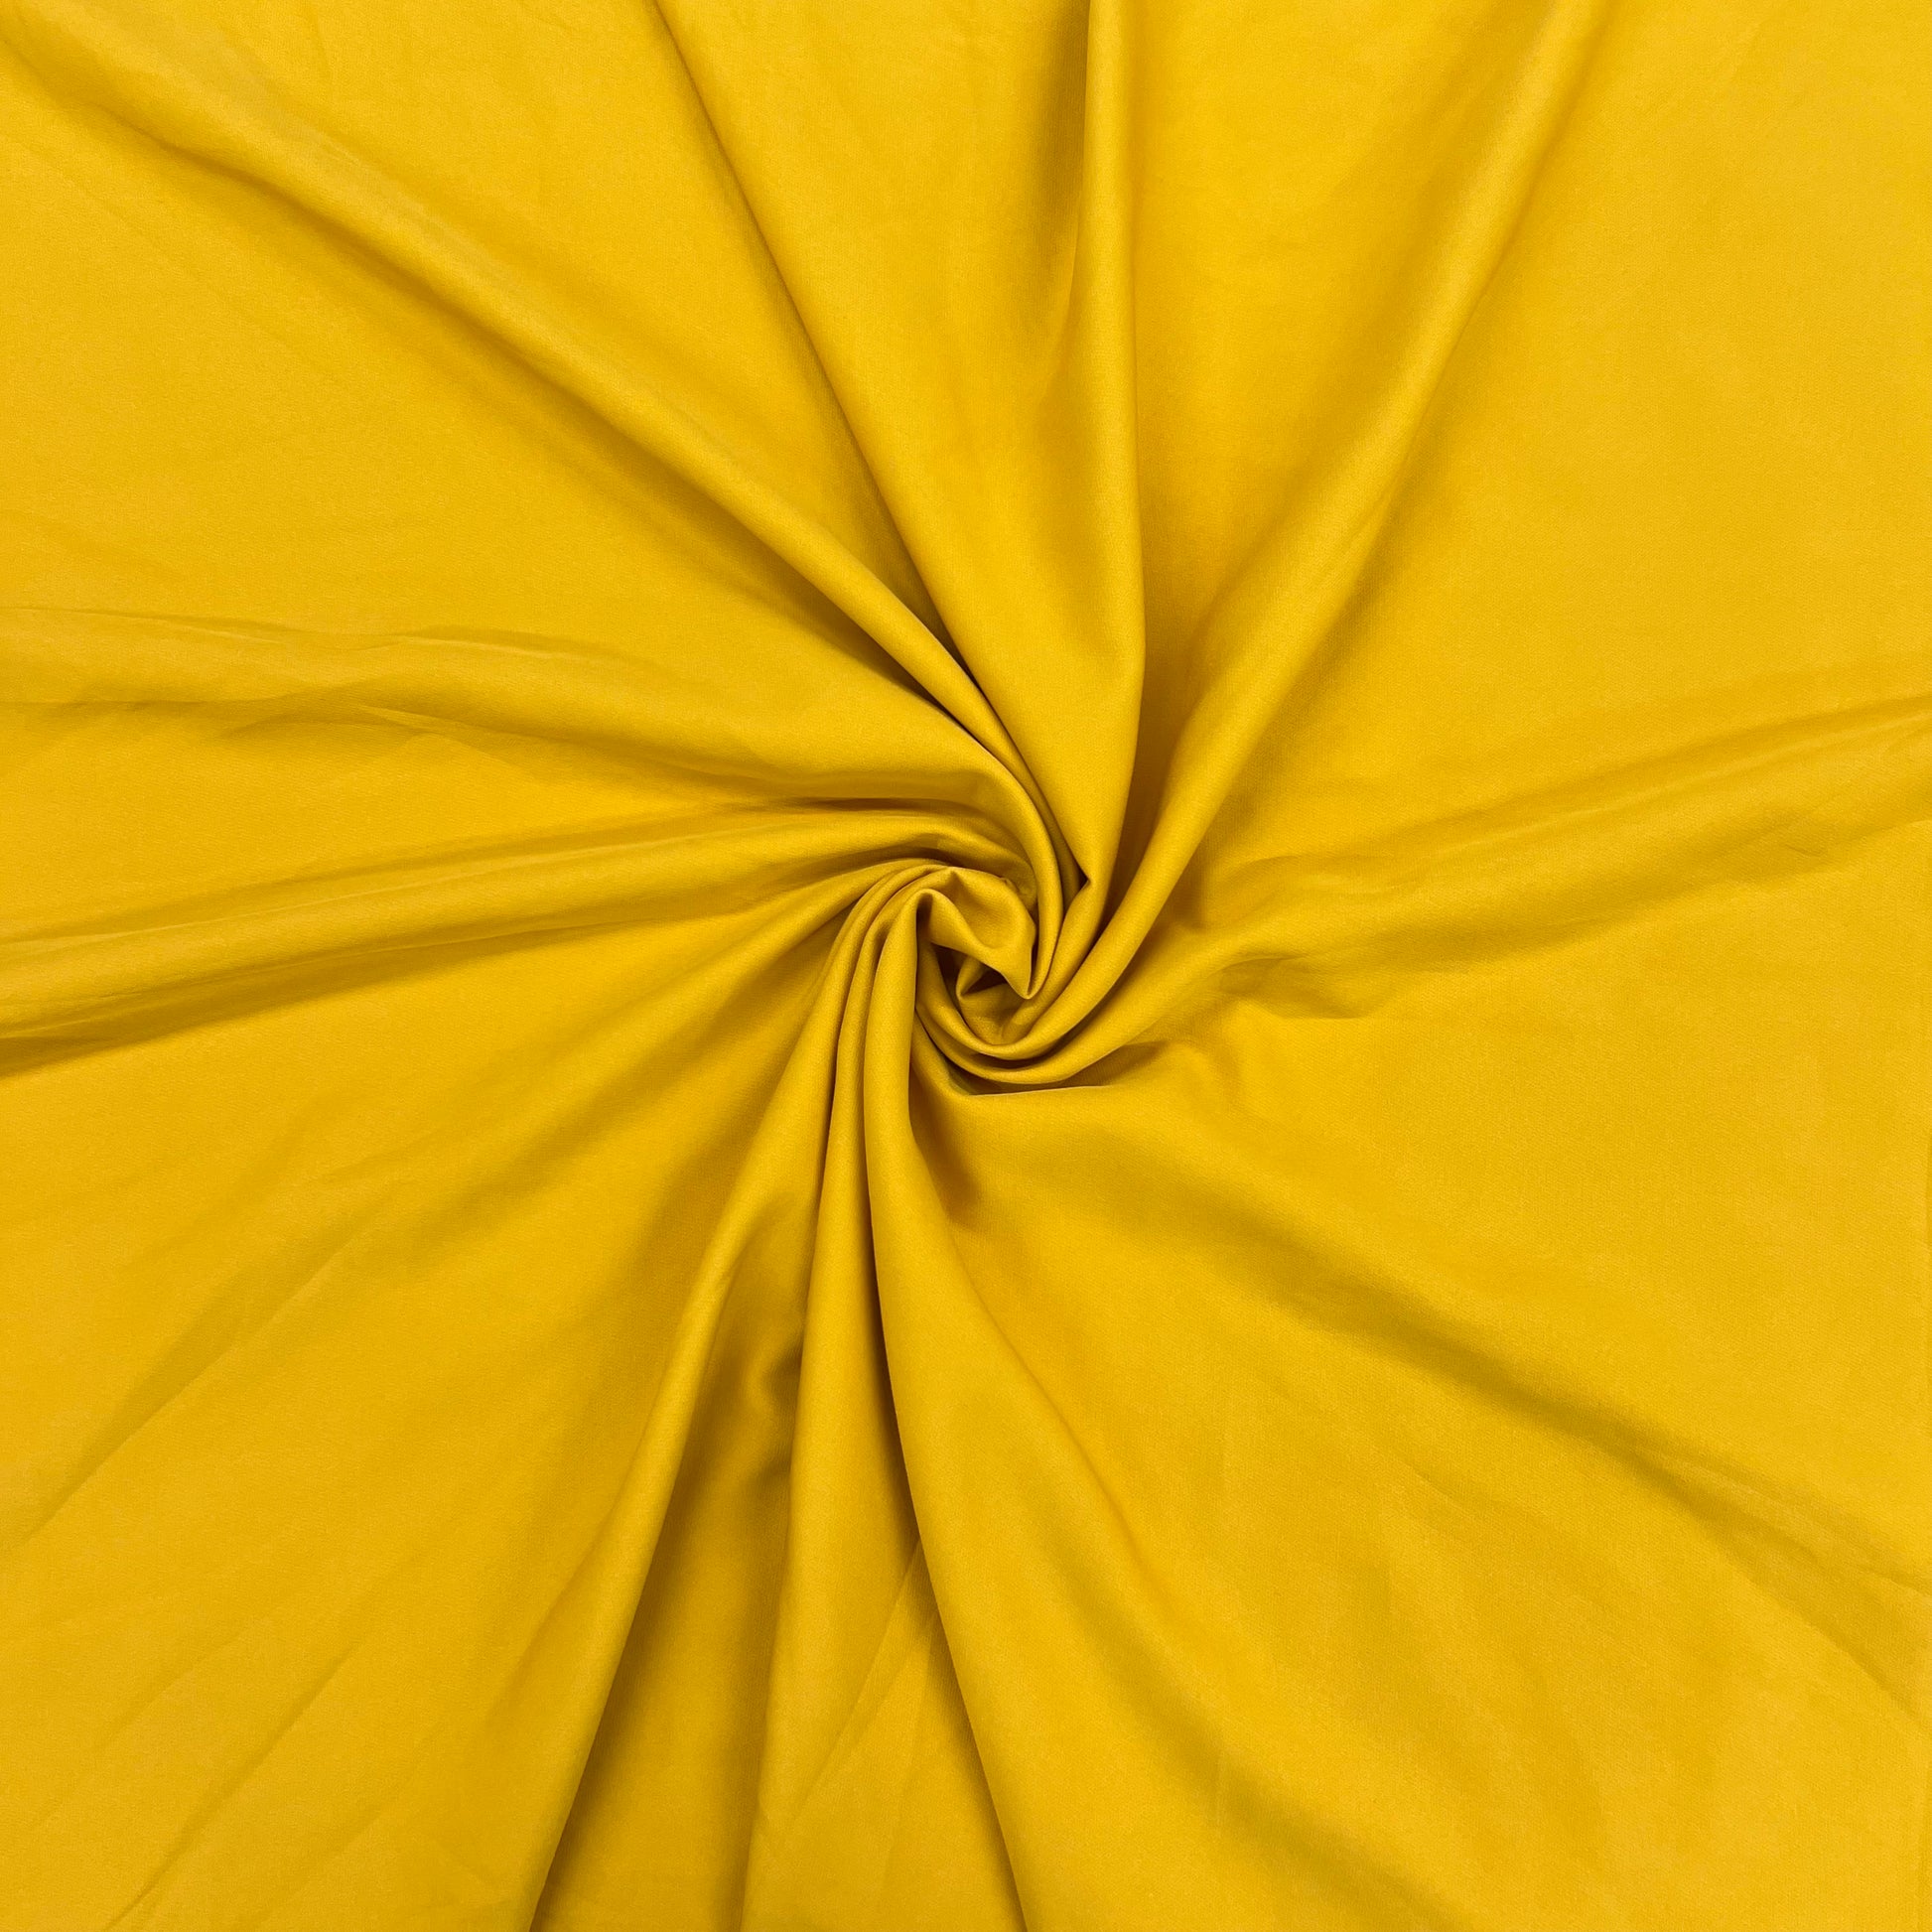 Mustard Yellow Solid Banana Crepe Fabric - TradeUNO